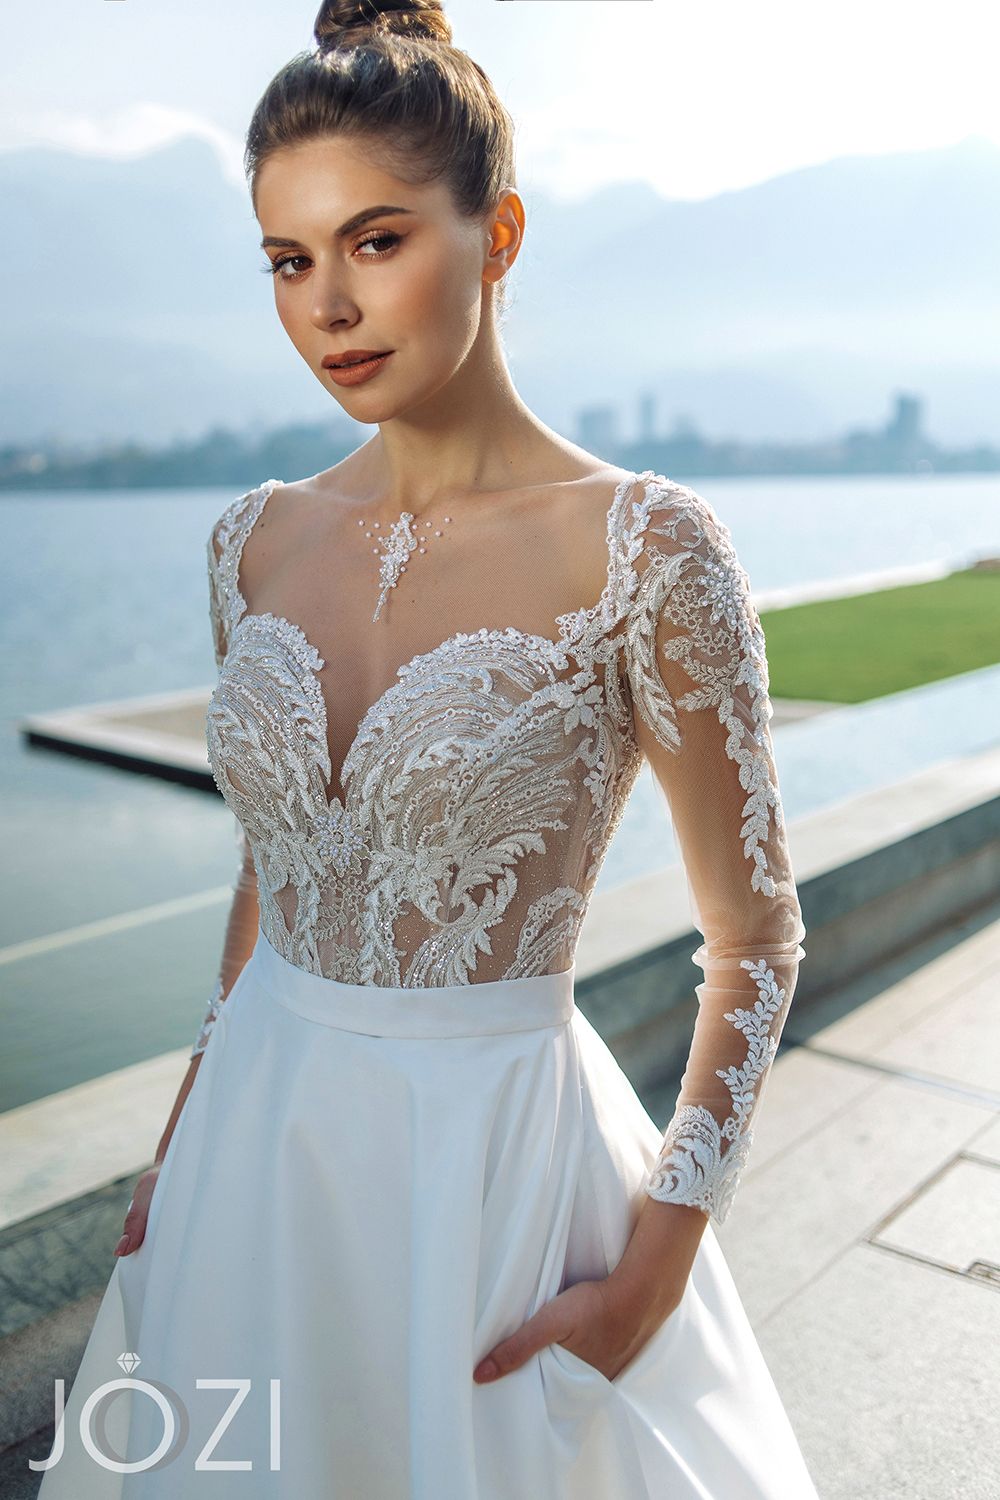 Свадебное платье Веста